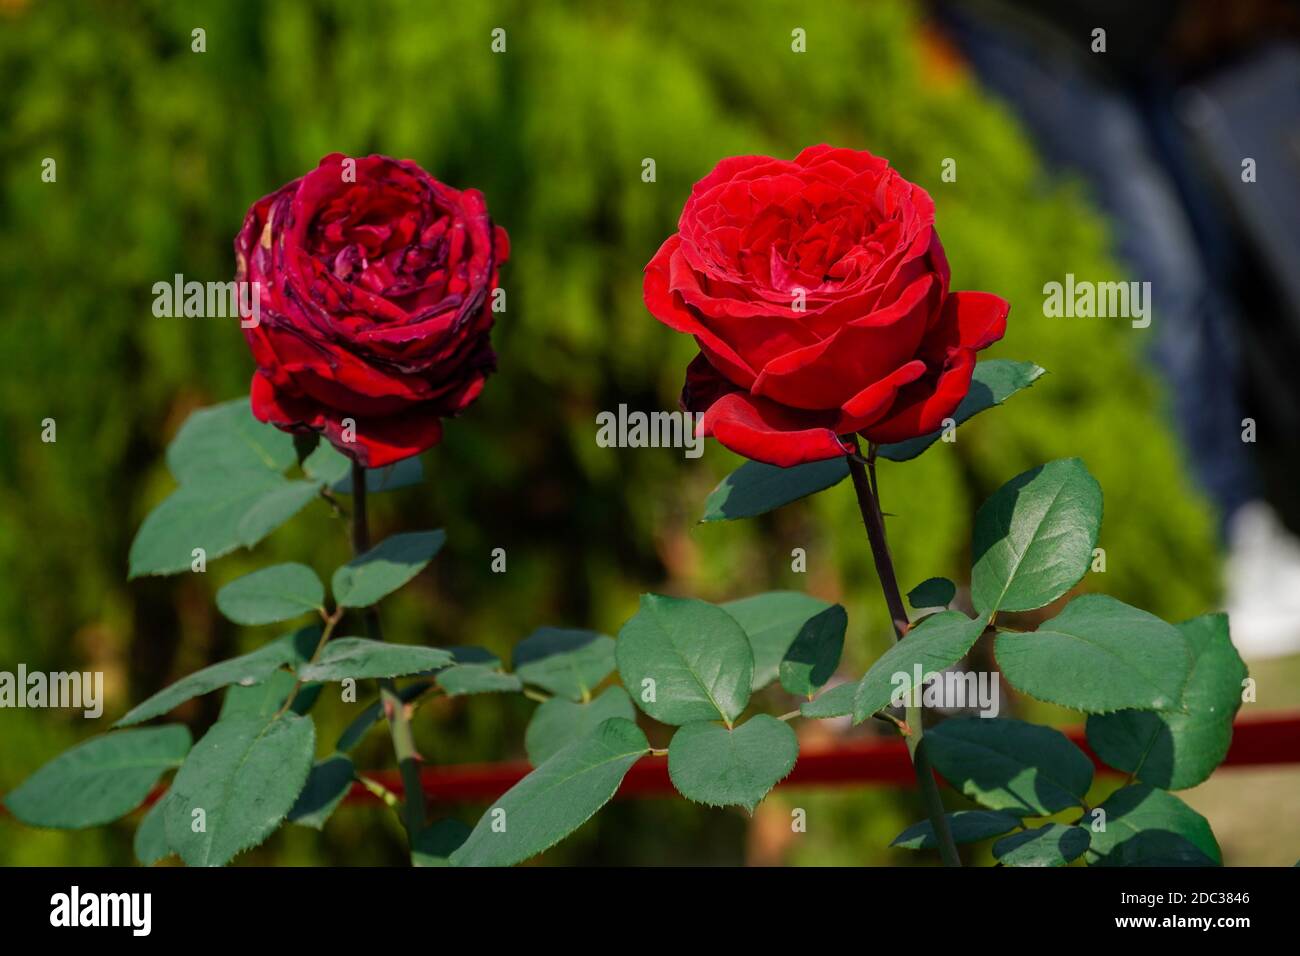 Photo de deux roses avec fond vert, amour, PHOTOGRAPHIE FLORALE Banque D'Images